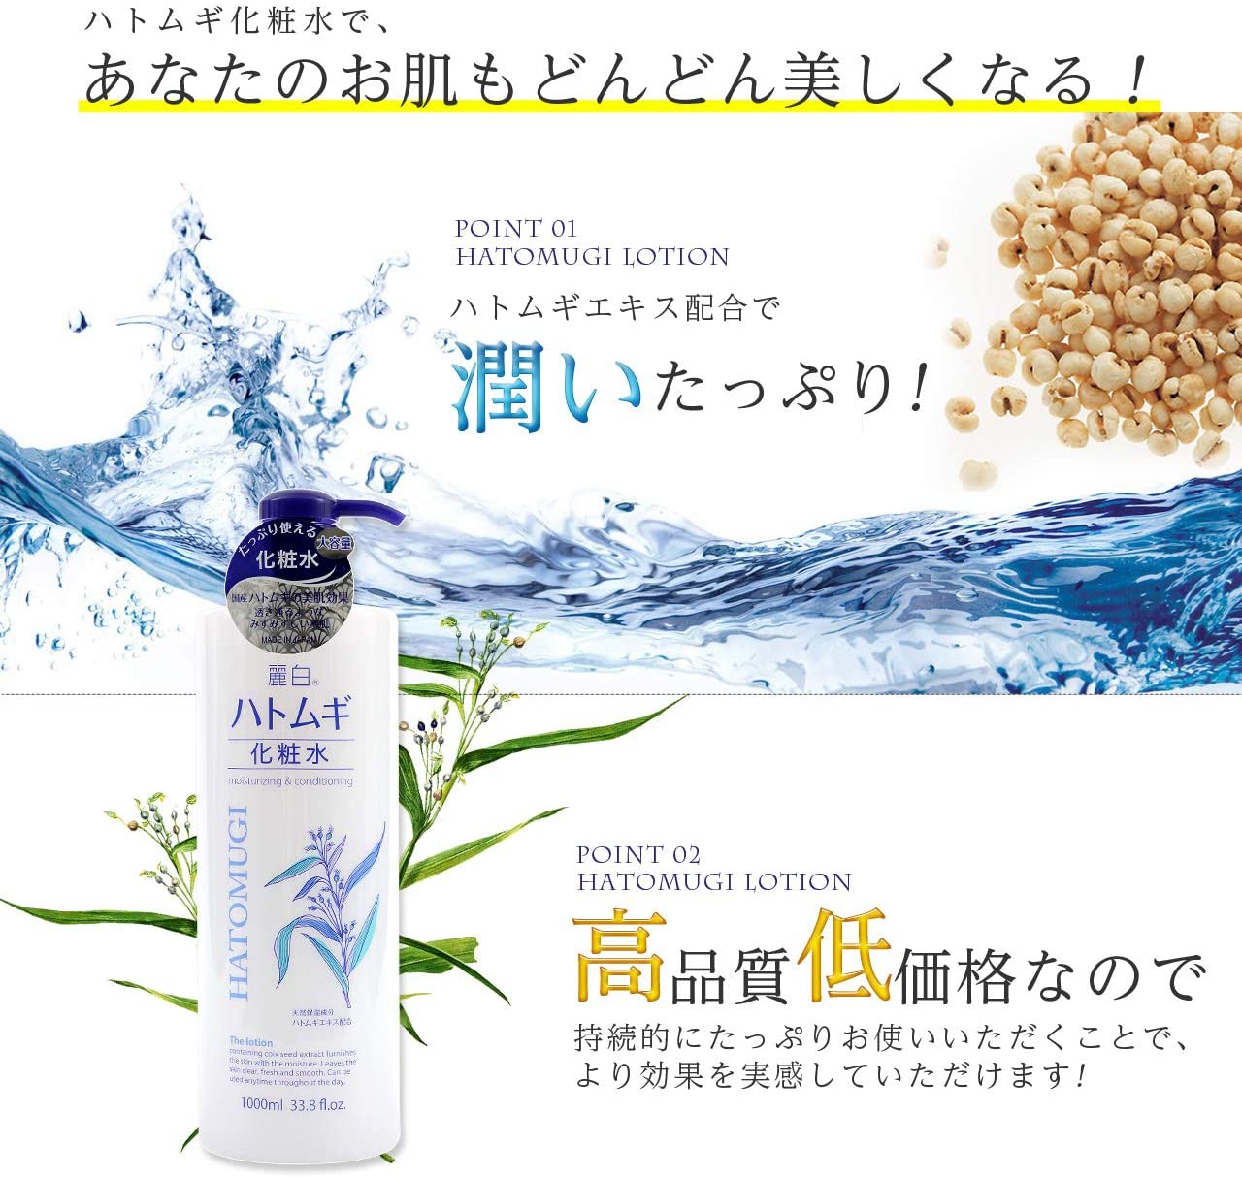 麗白 ハトムギ化粧水の商品画像7 